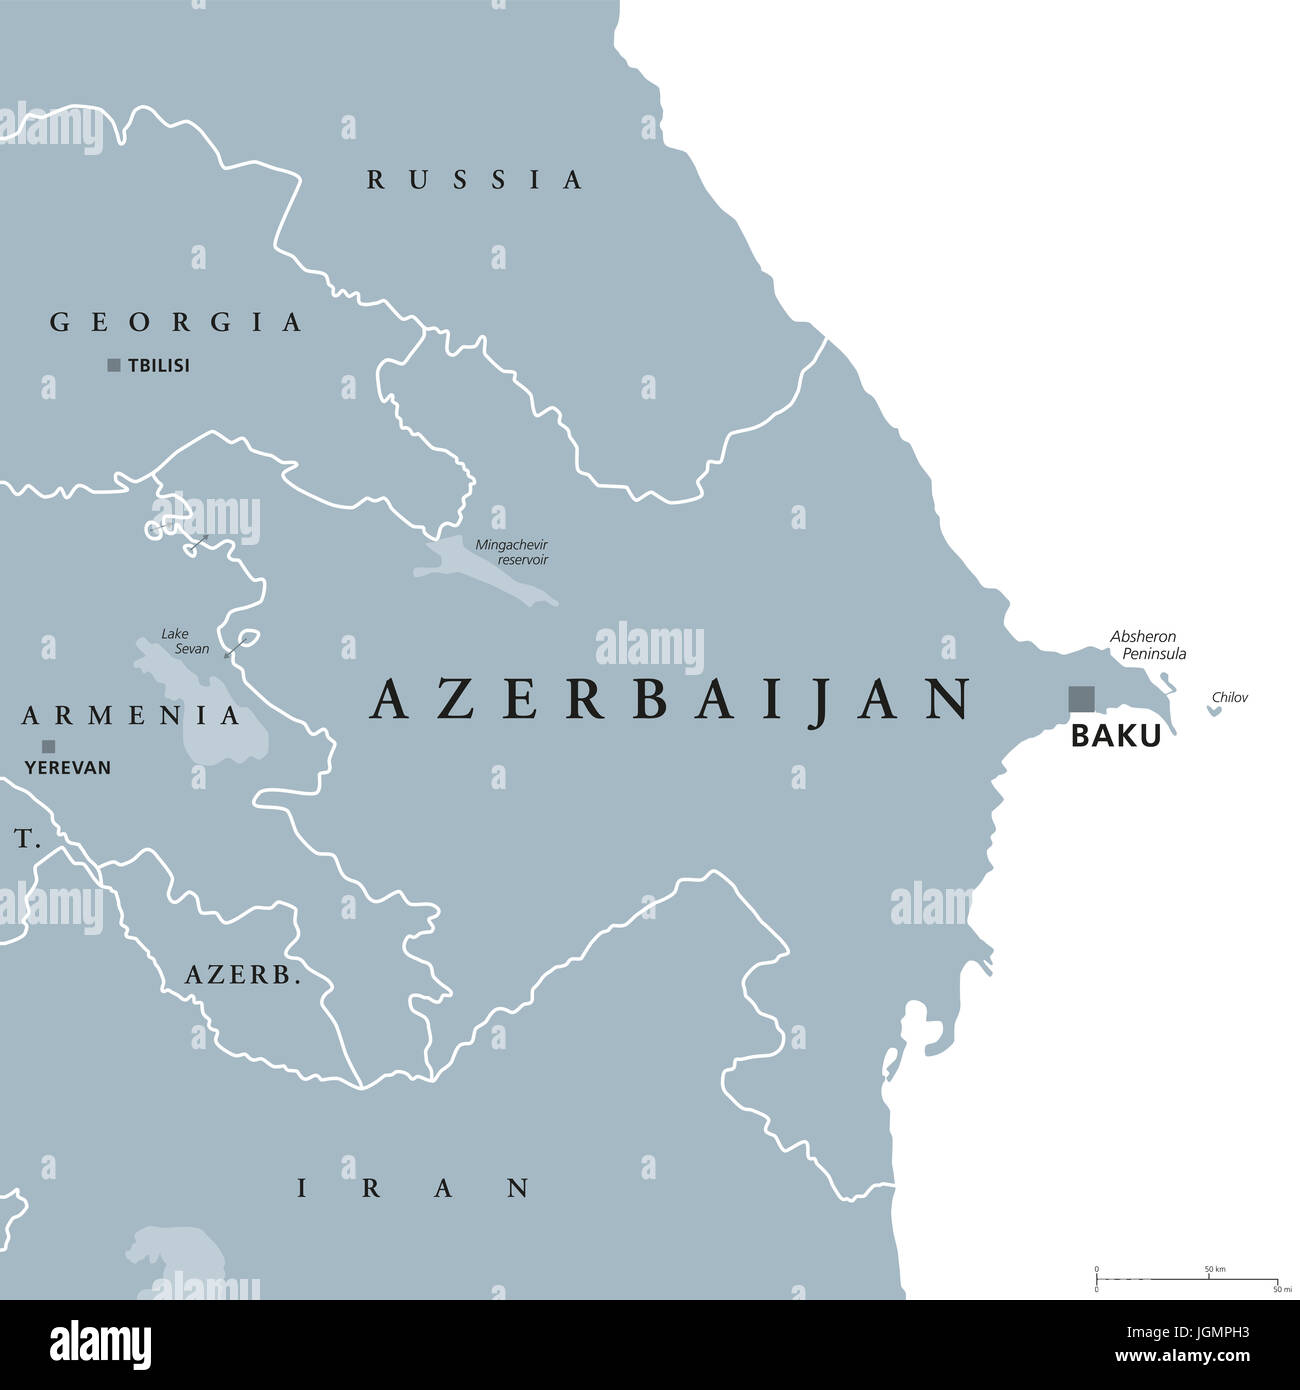 Azerbaiyan Mapa Politico Con Capital Baku Y Enclave De Najichevan Republica Y El Pais Y En La Region Del Caucaso Meridional Obligado Por El Mar Caspio Fotografia De Stock Alamy